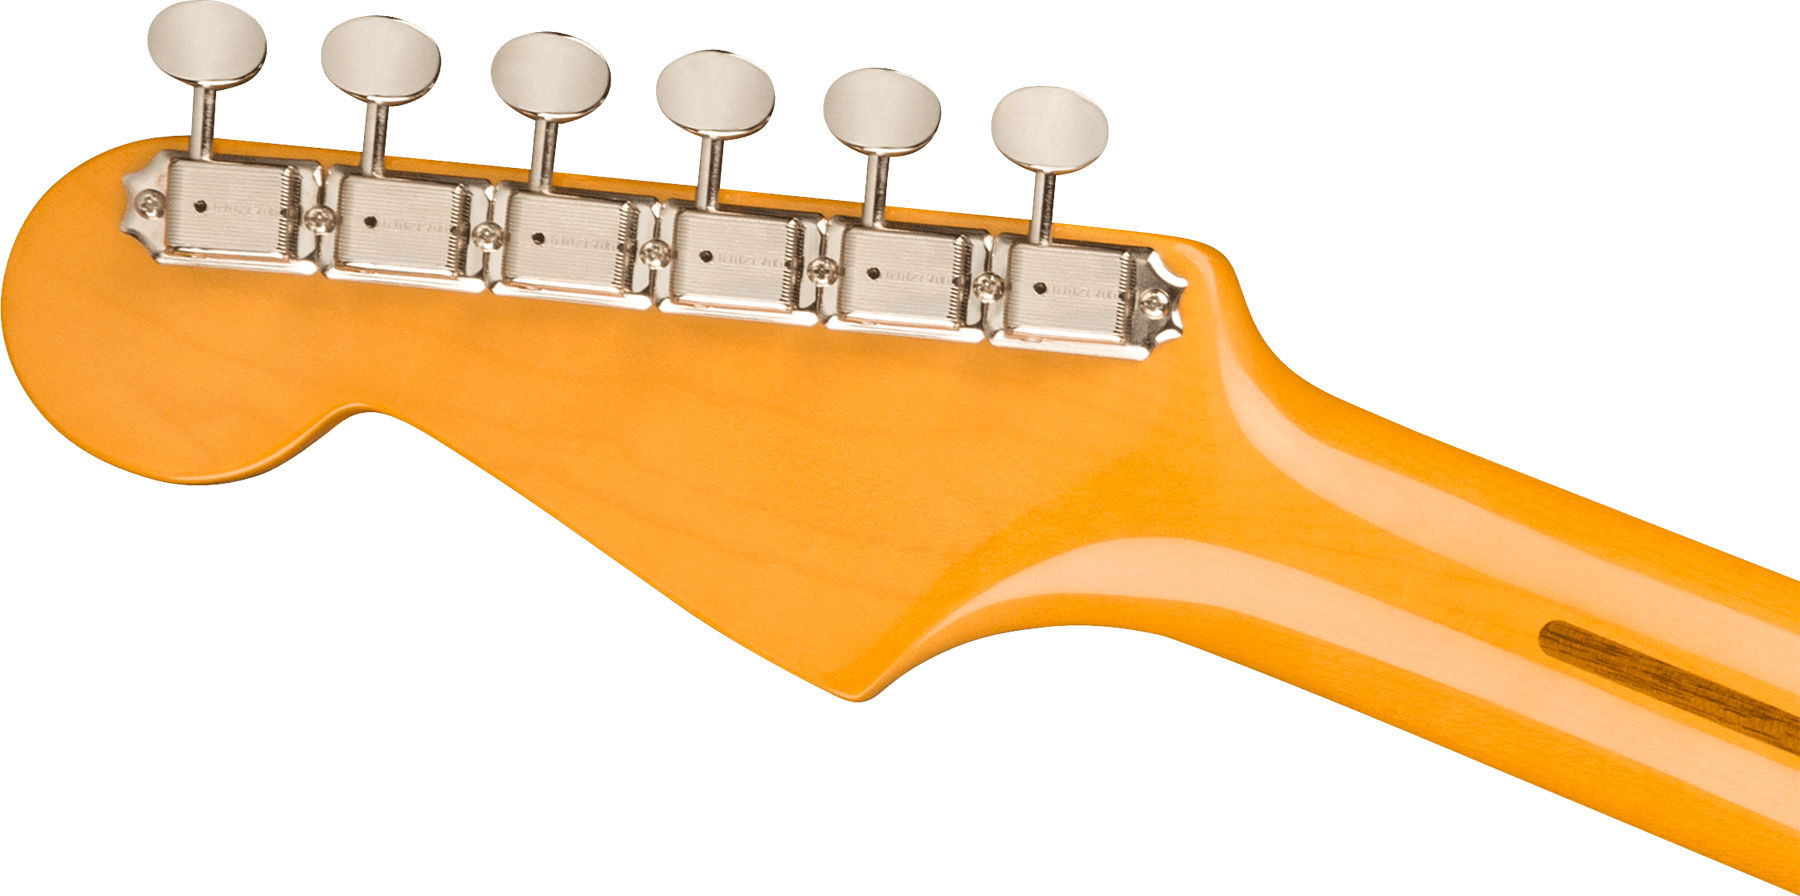 Fender Strat 1957 American Vintage Ii Usa 3s Trem Mn - 2-color Sunburst - Elektrische gitaar in Str-vorm - Variation 3